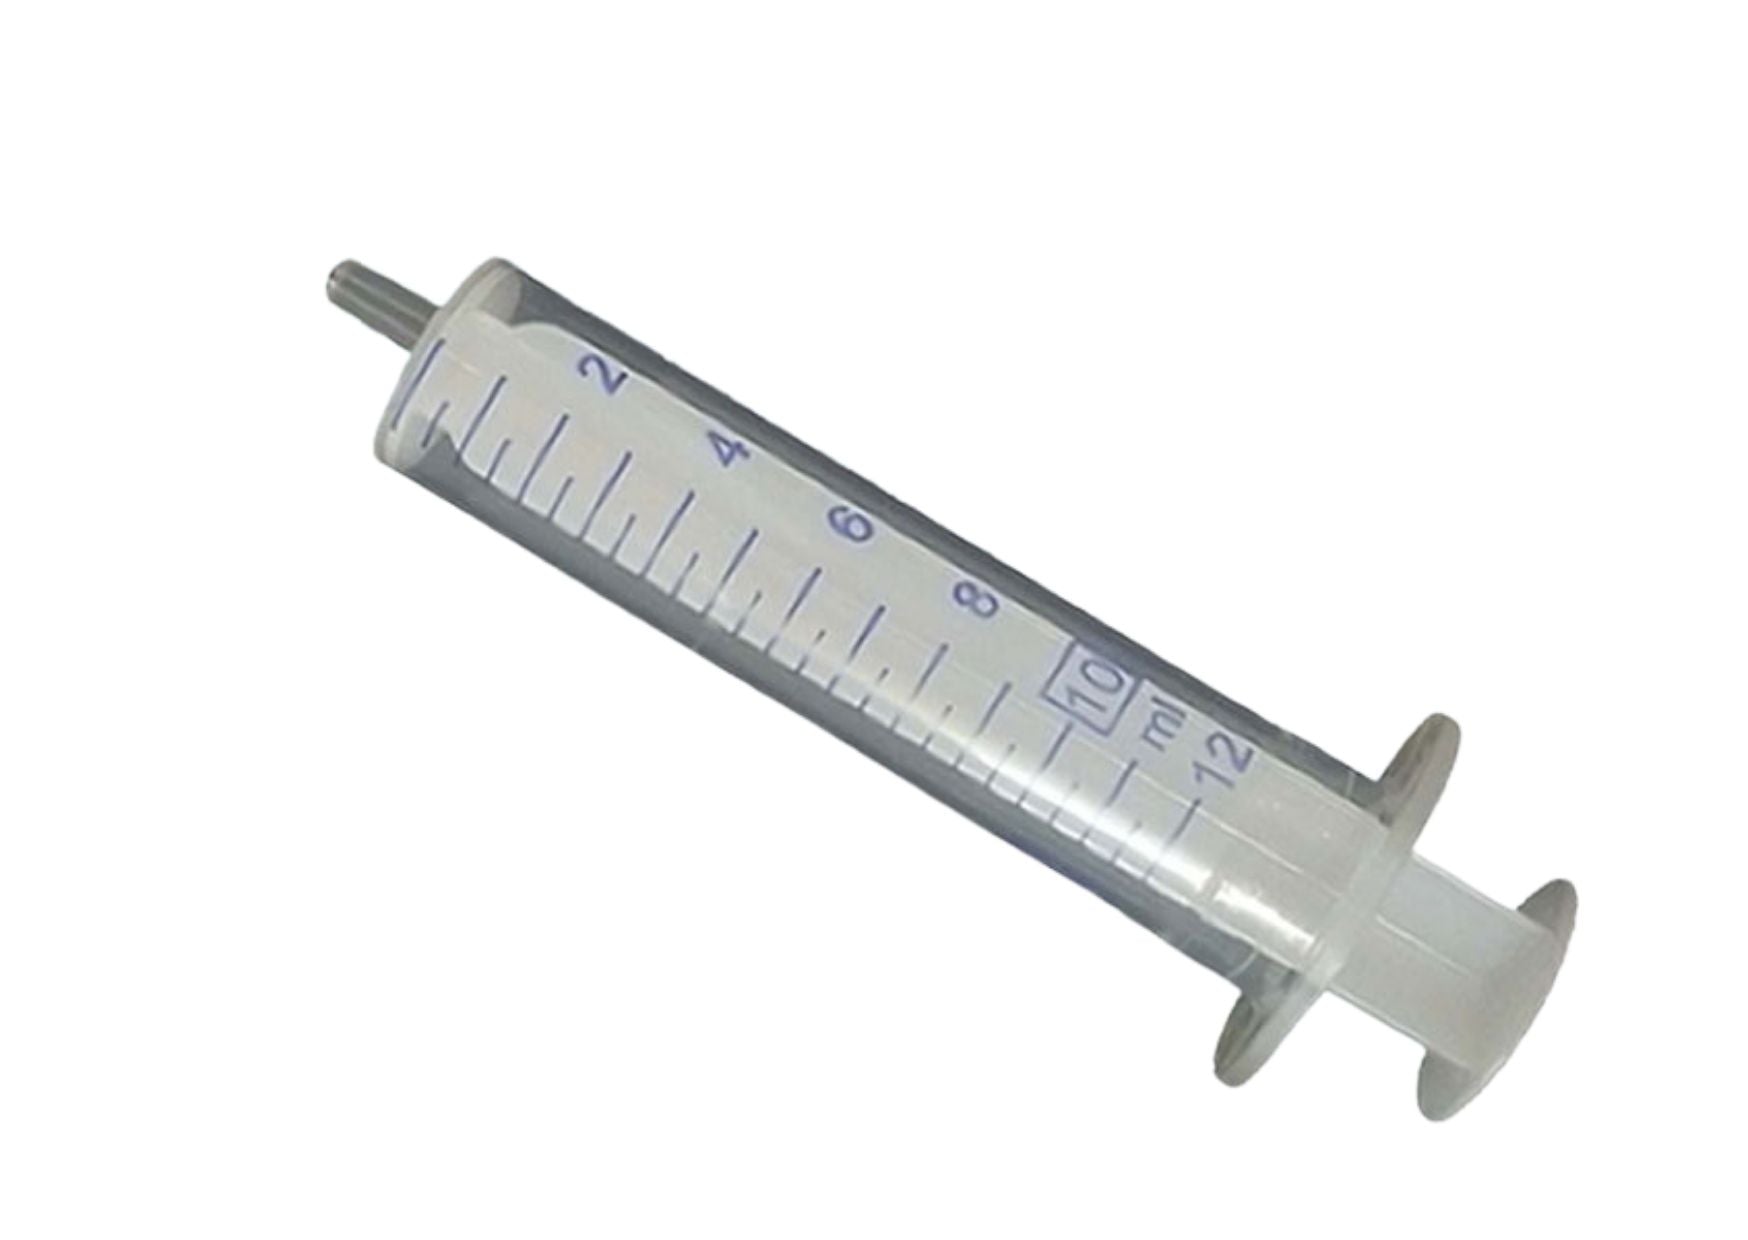 Disposable syringe, Luer attachment, 2-piece - 0